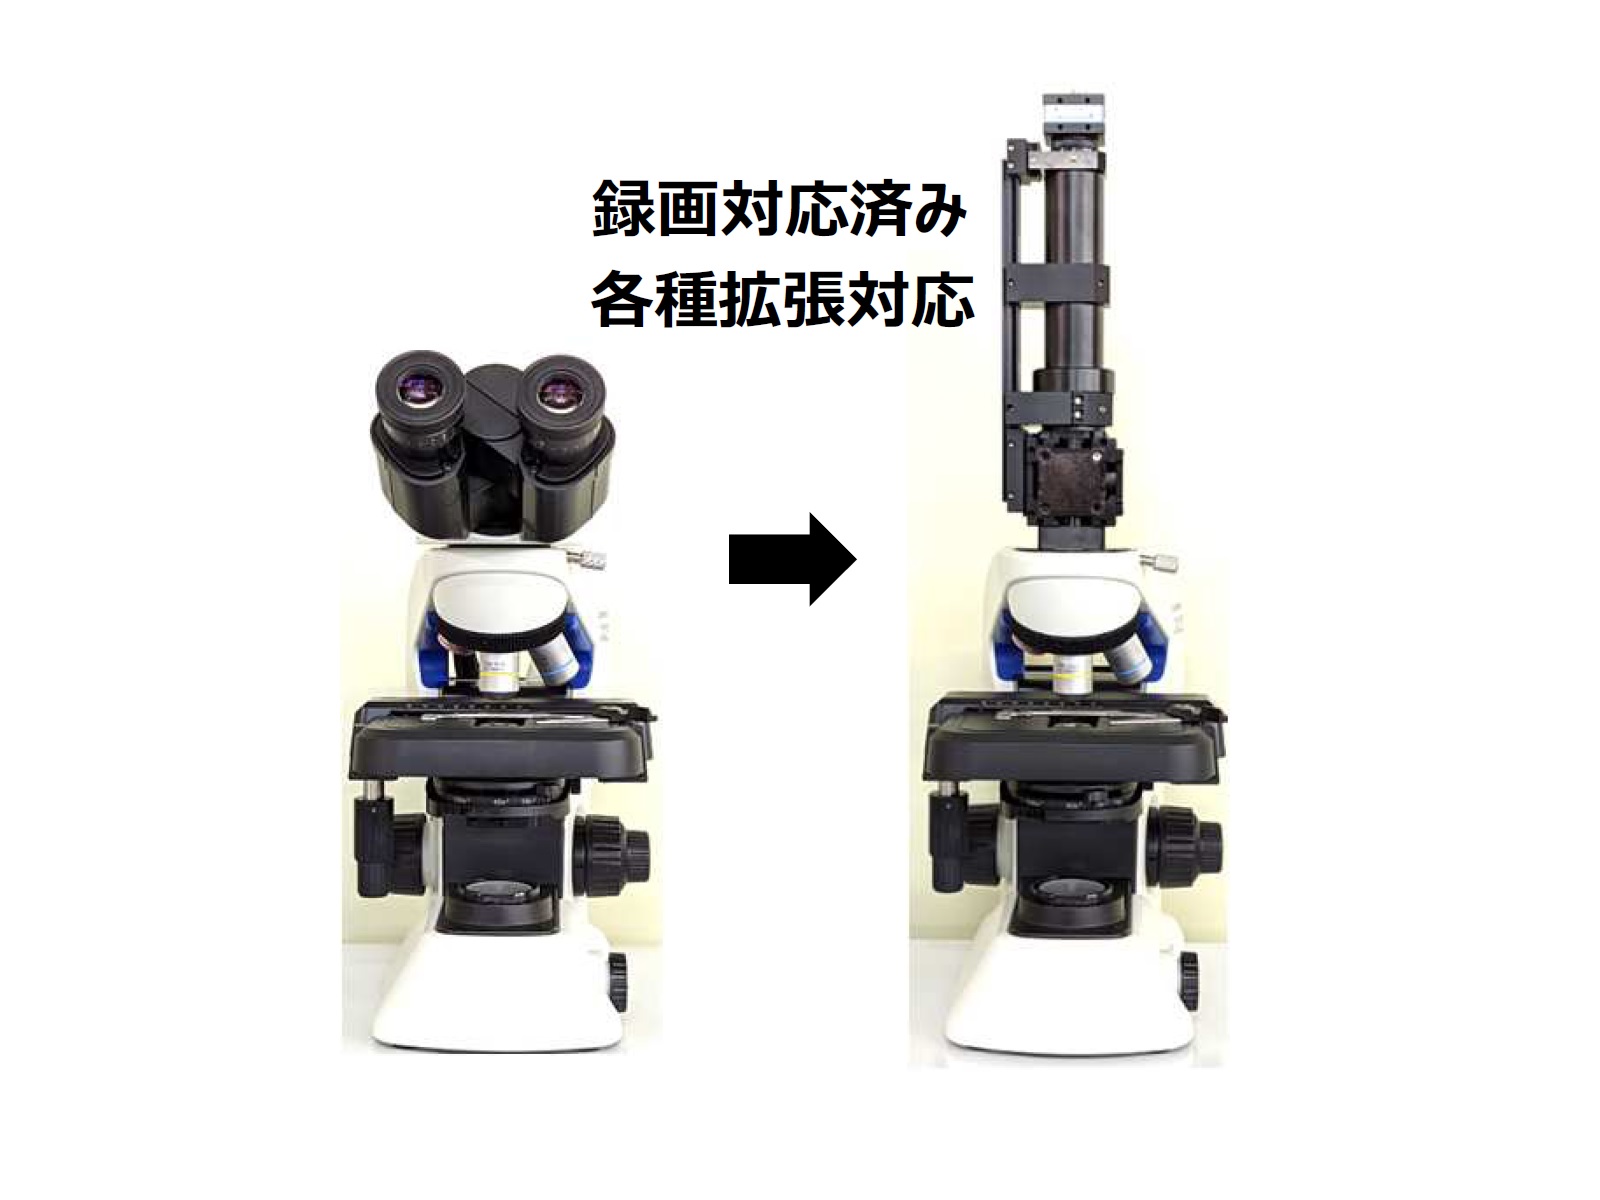 エビデント教育顕微鏡向け拡張ユニット / CX23-181cube